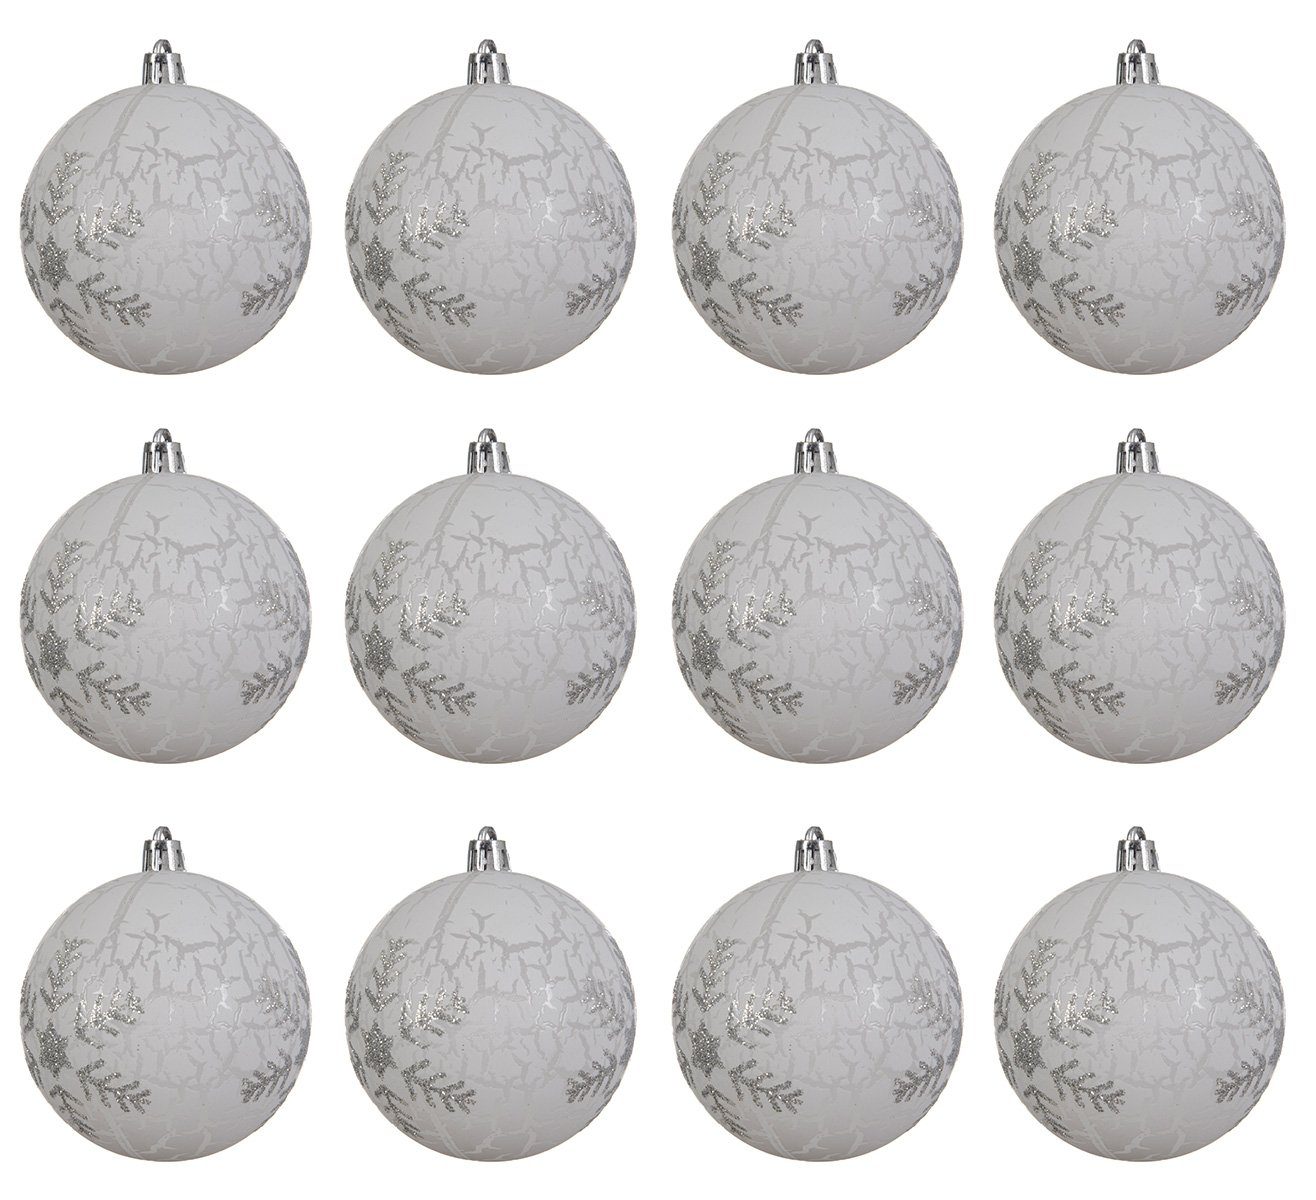 Decoris season decorations Weihnachtsbaumkugel, Weihnachtskugeln Kunststoff 8cm Schneeflocken Motiv 12er Set - Weiß | Weihnachtskugeln